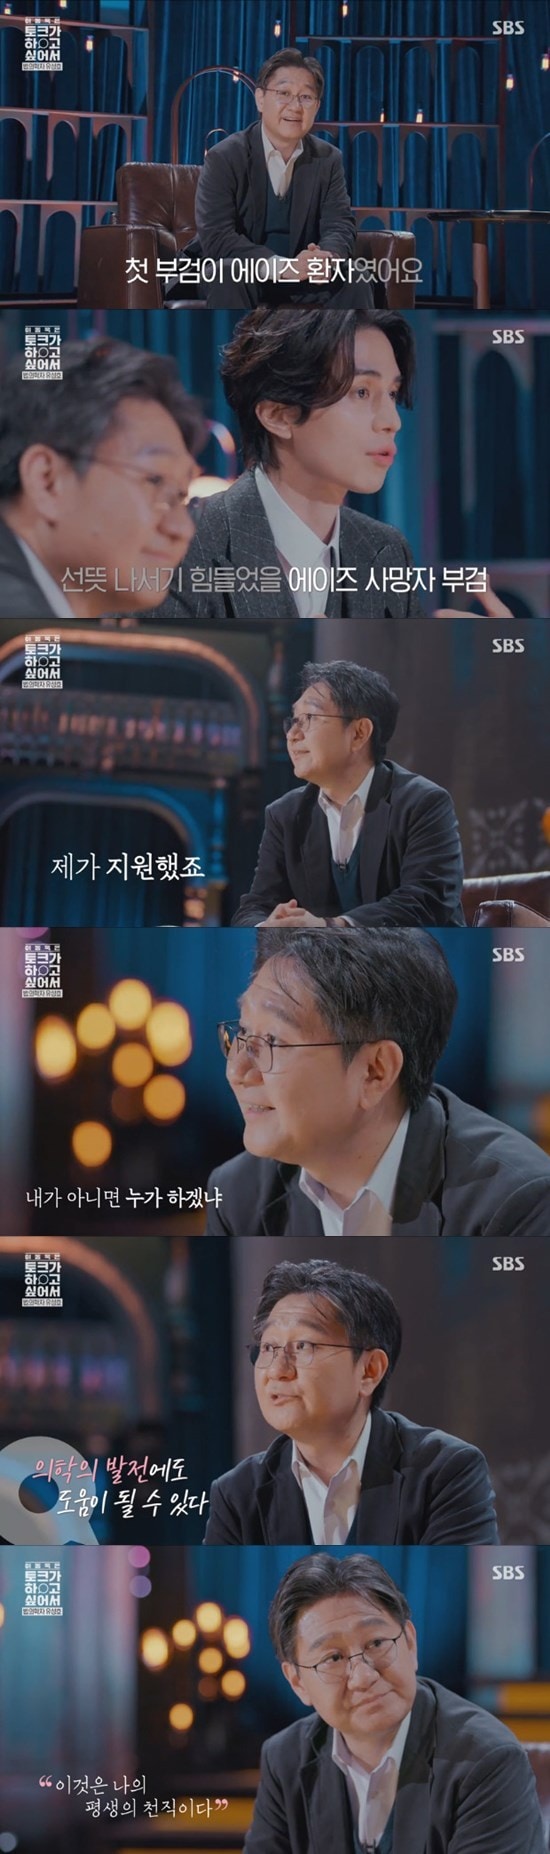 SBS'이동욱은 토크가 하고 싶어서' © 뉴스1